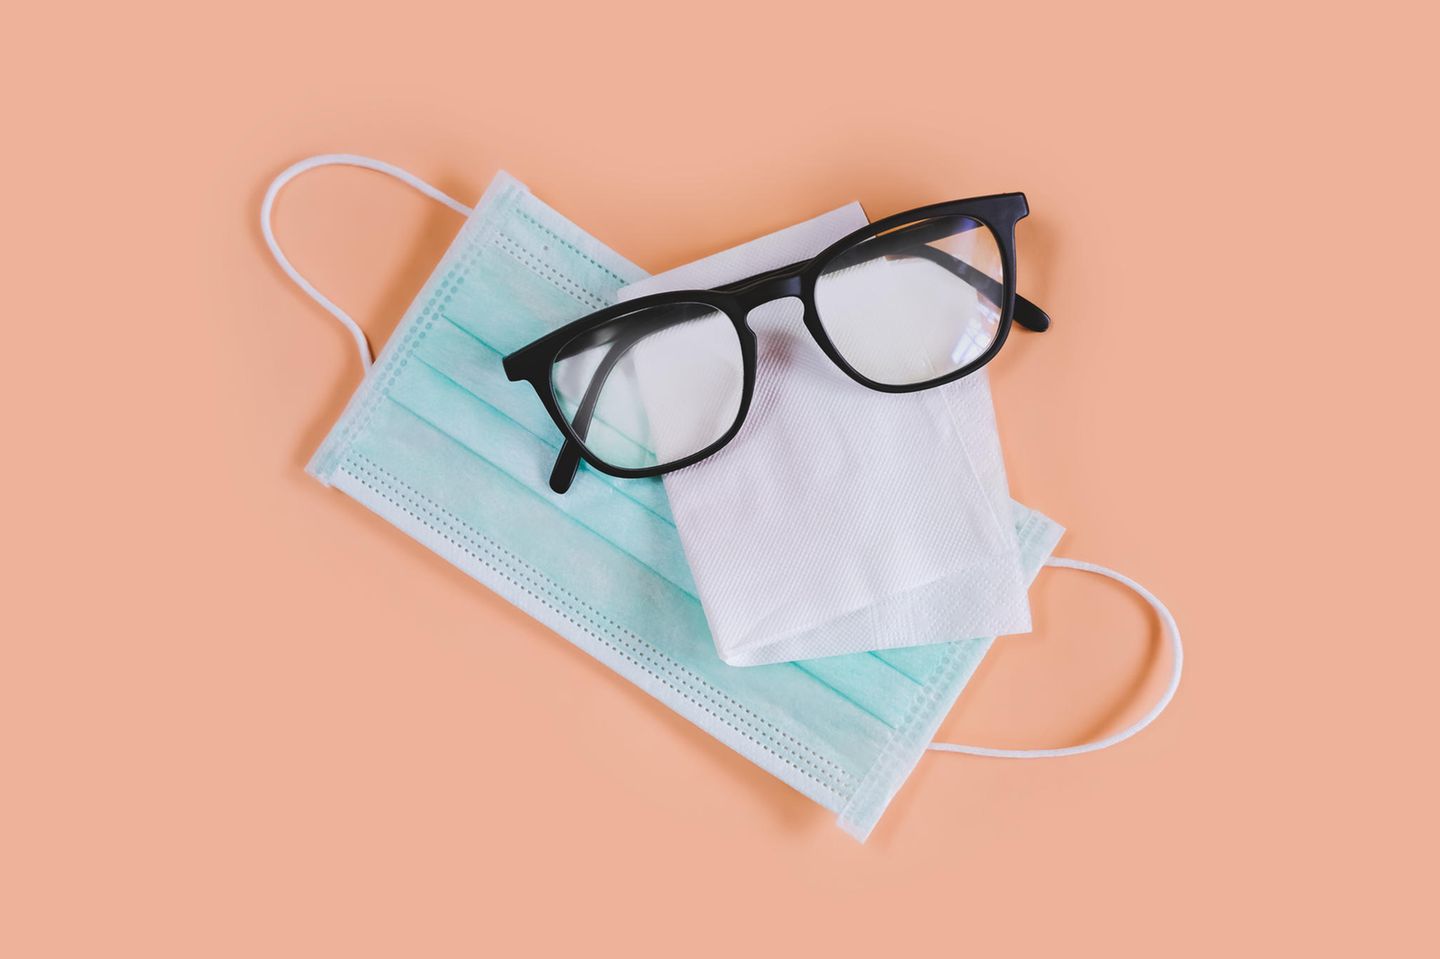 Corona aktuell: Brille beschlägt durch Schutzmaske – das hilft dagegen